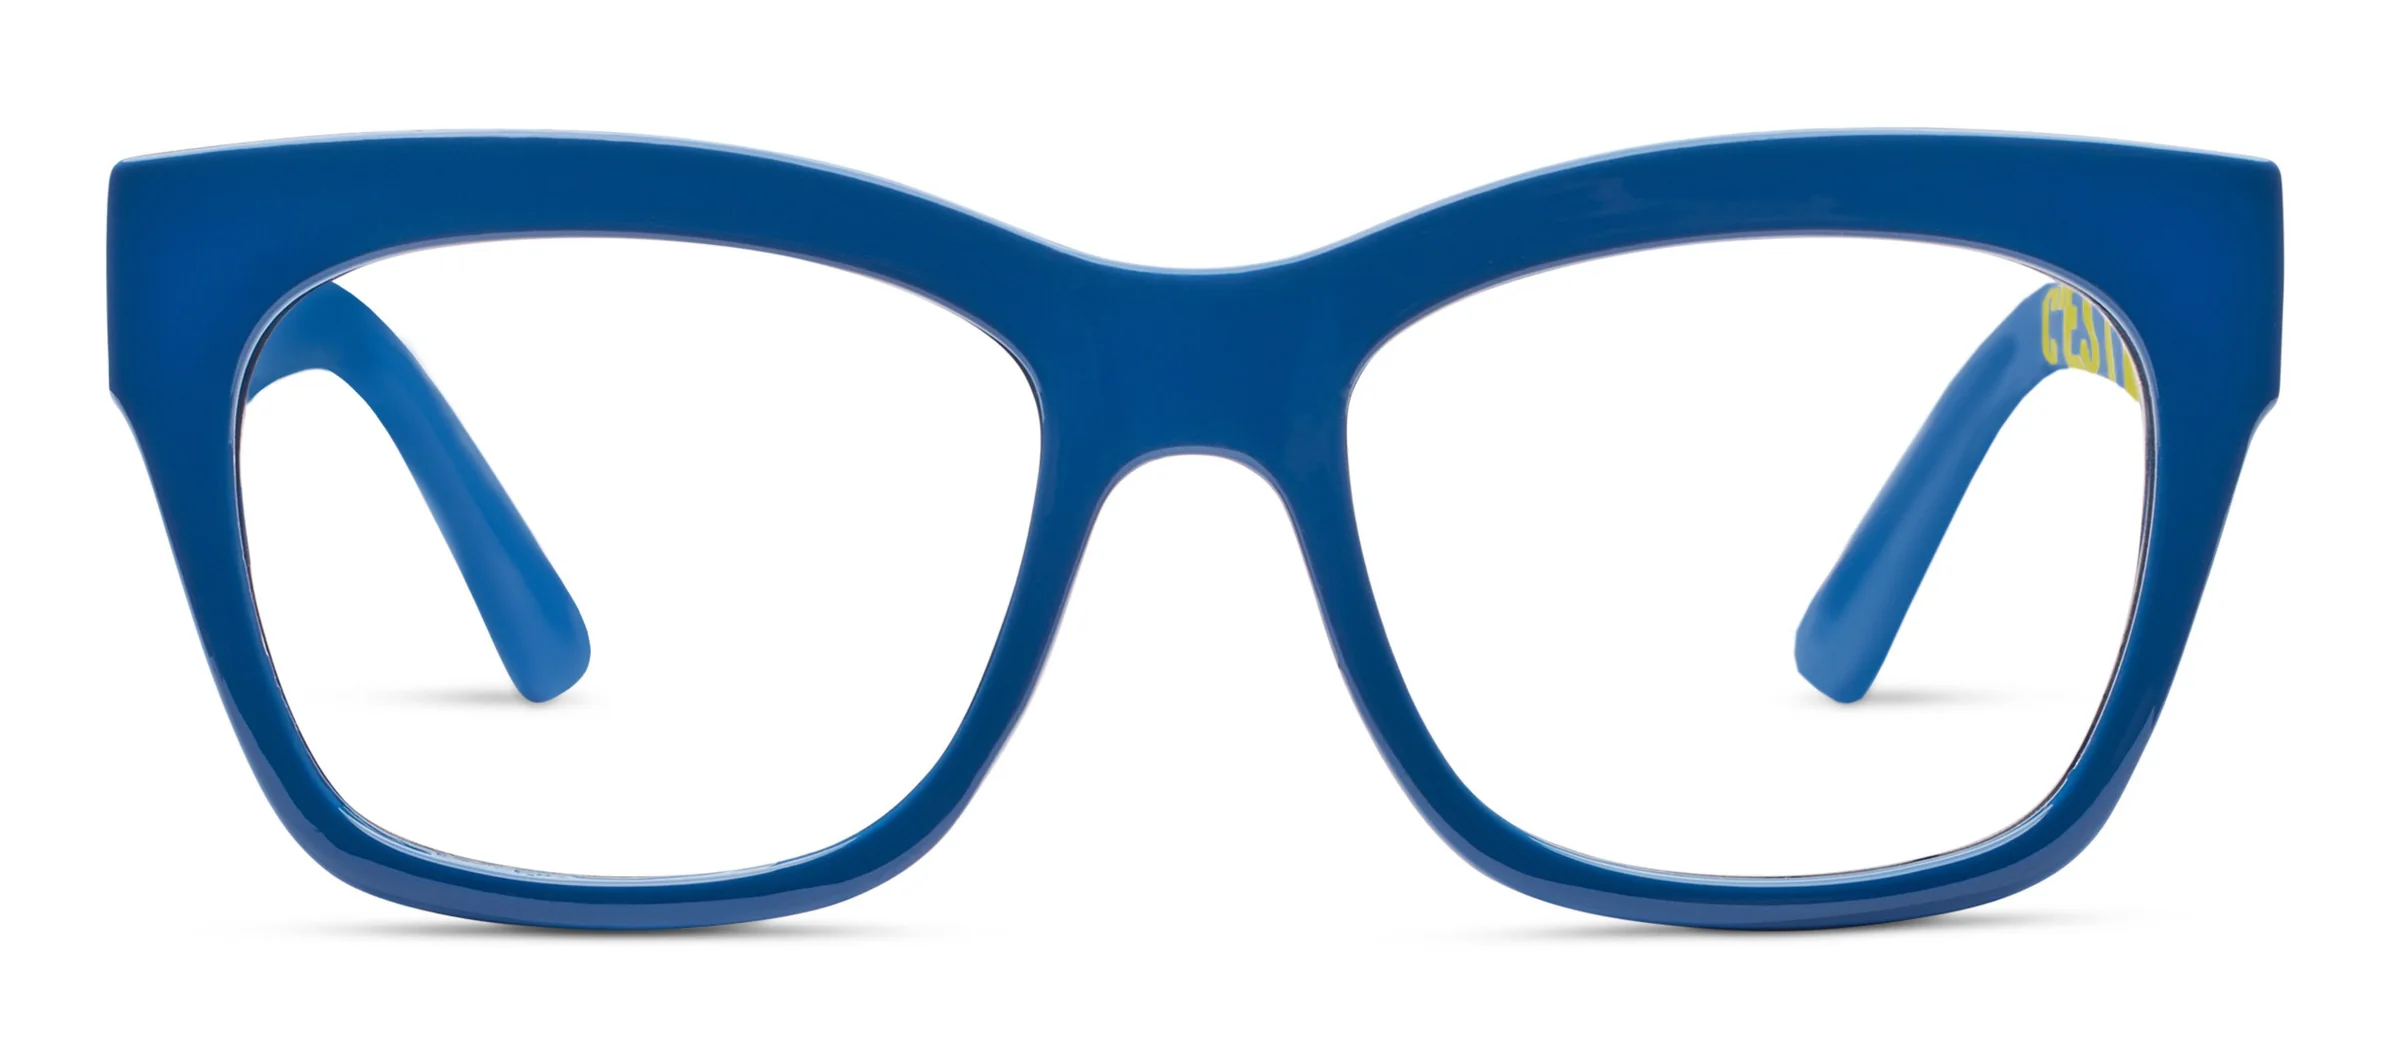 C'est La Vie Blue- Peepers Reading Glasses